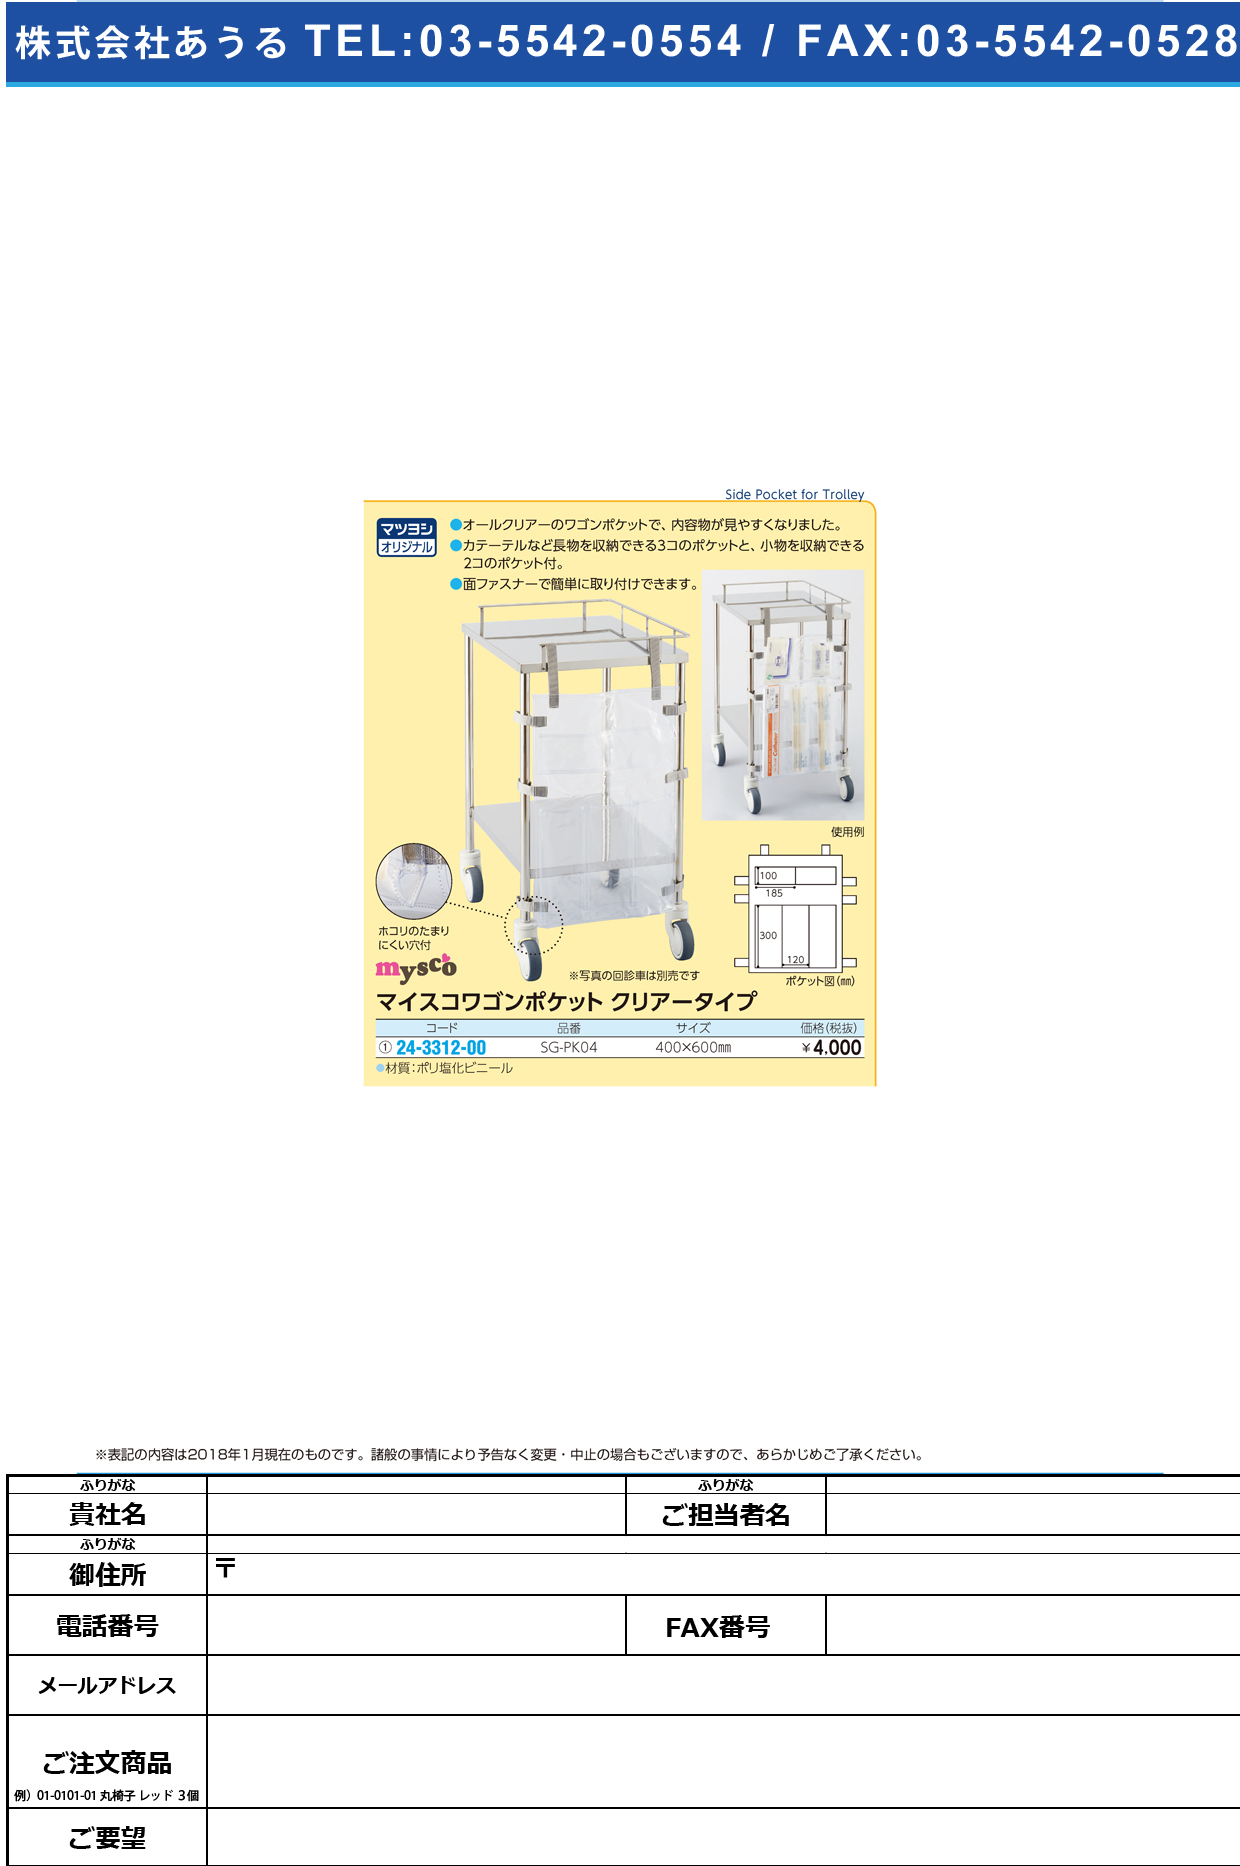 (24-3312-00)マイスコワゴンポケット SG-PK04 ﾏｲｽｺﾜｺﾞﾝﾎﾟｹｯﾄ(ｸﾘｱｰ)【1枚単位】【2019年カタログ商品】